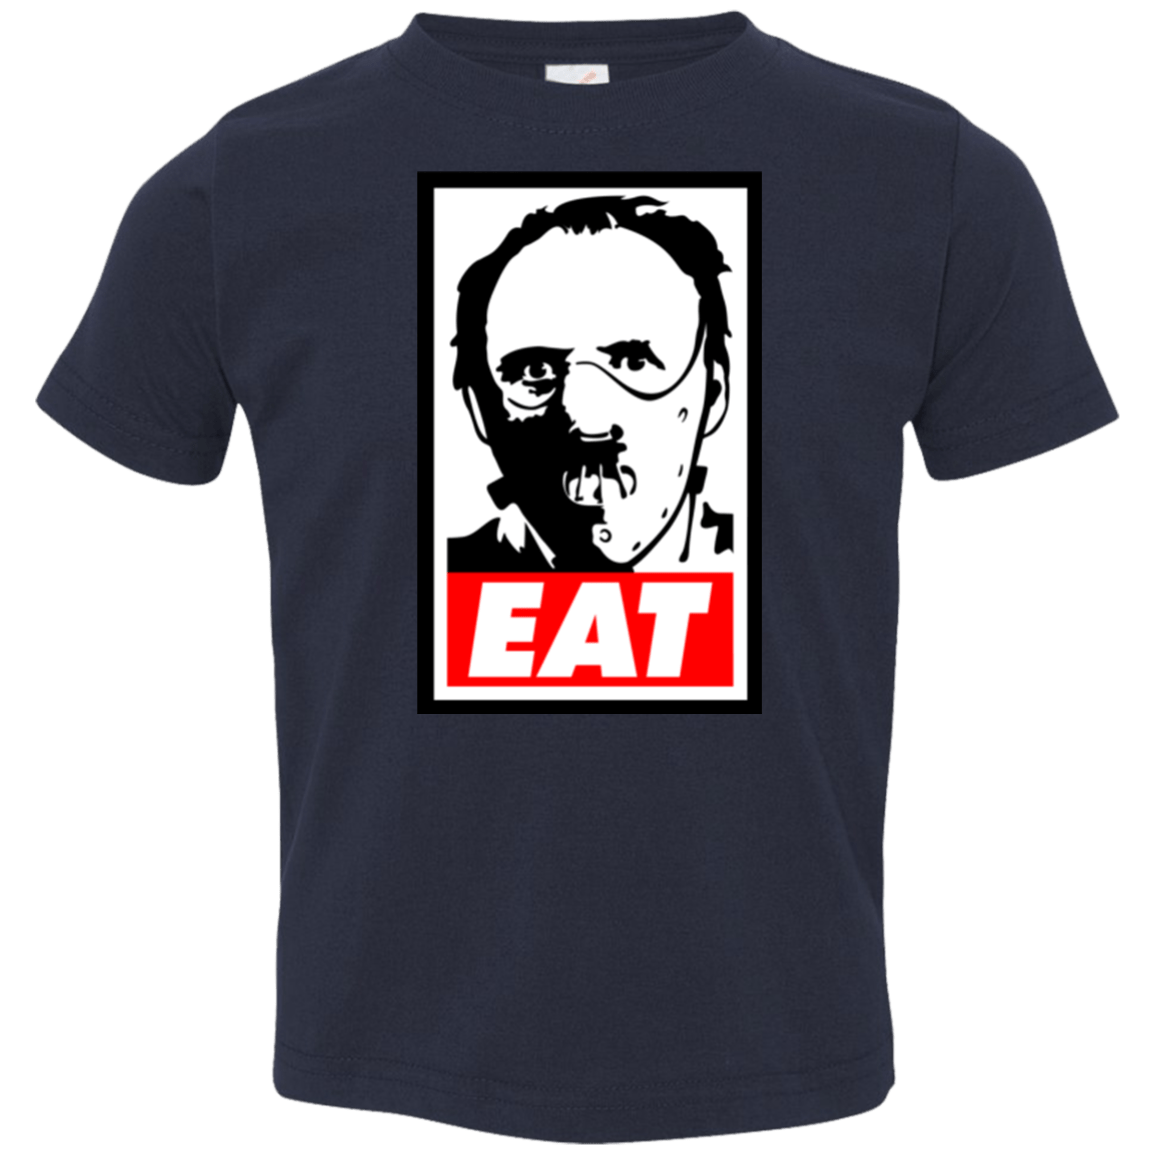 T-Shirts Navy / 2T Eat Toddler Premium T-Shirt